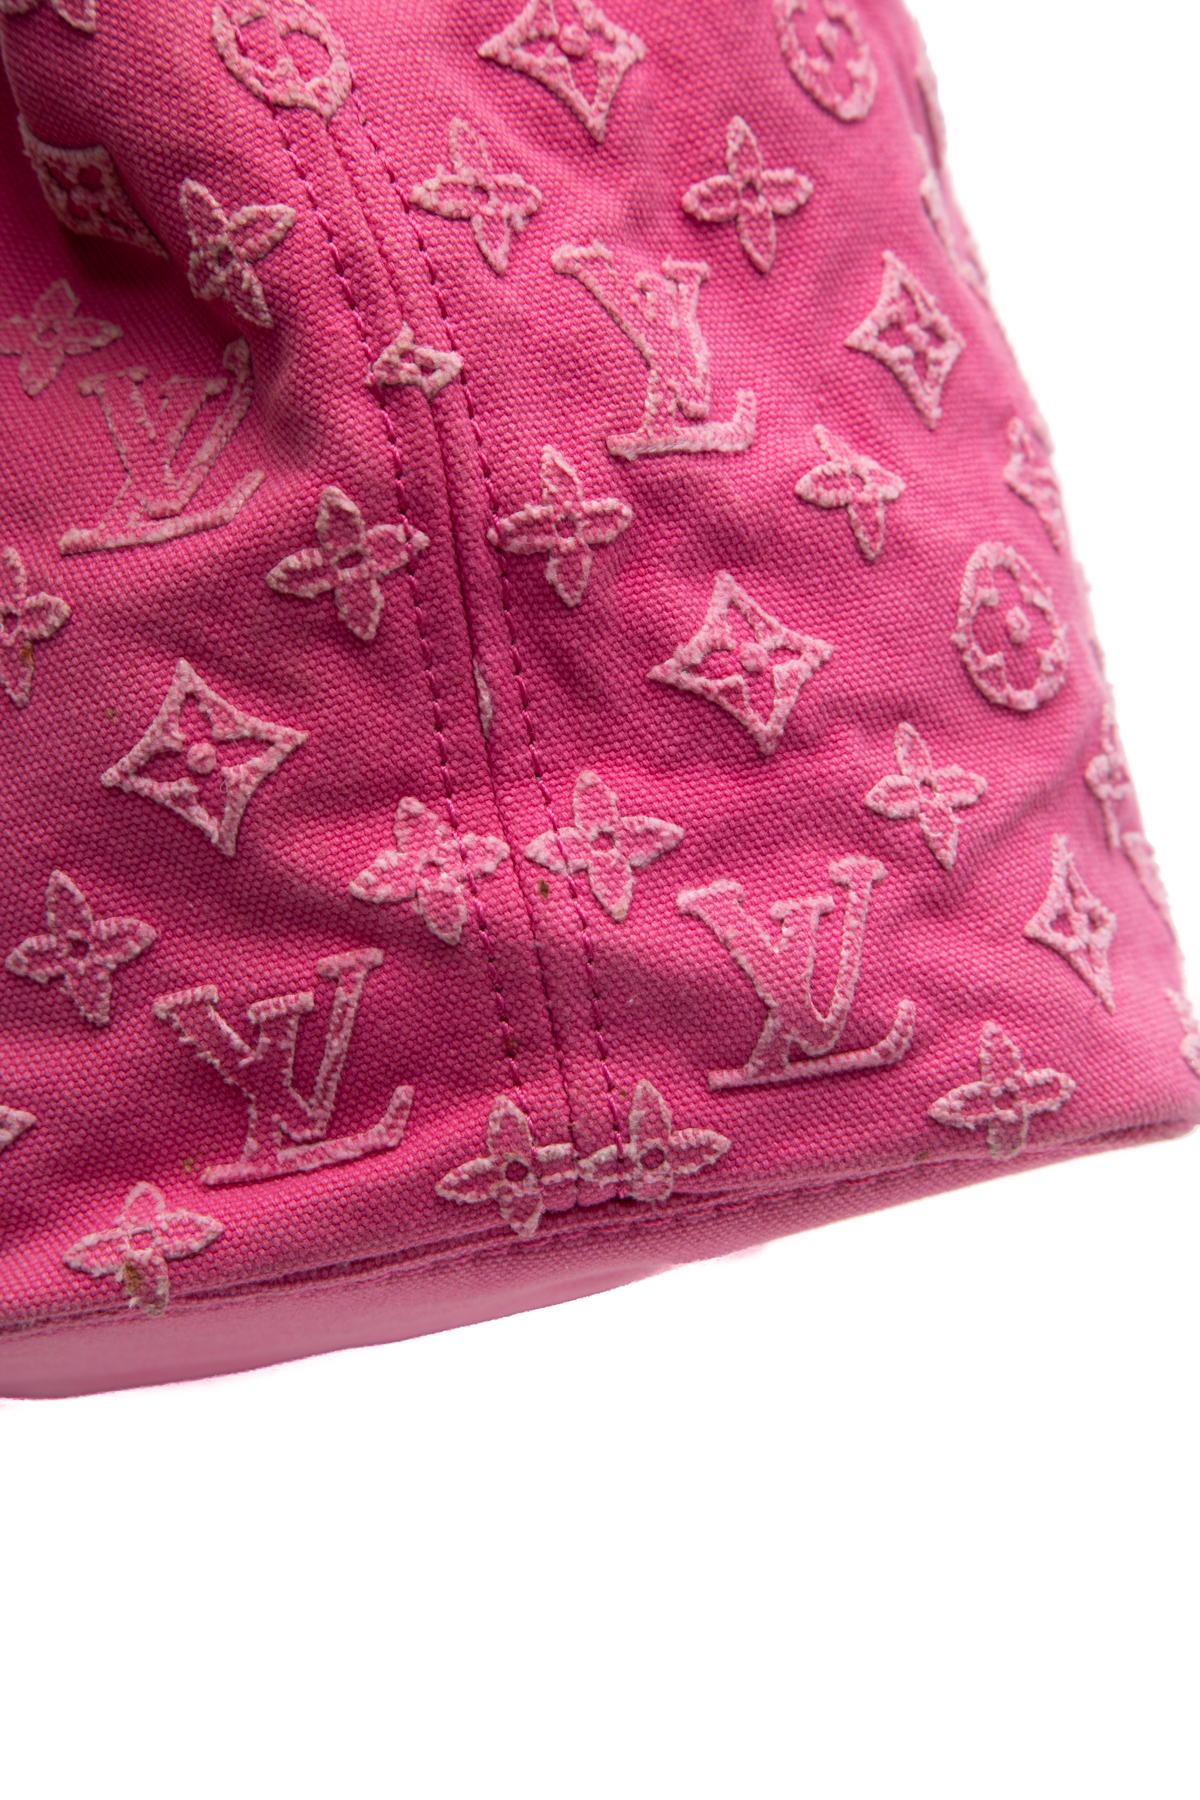 Louis Vuitton Pink Denim Neverfull